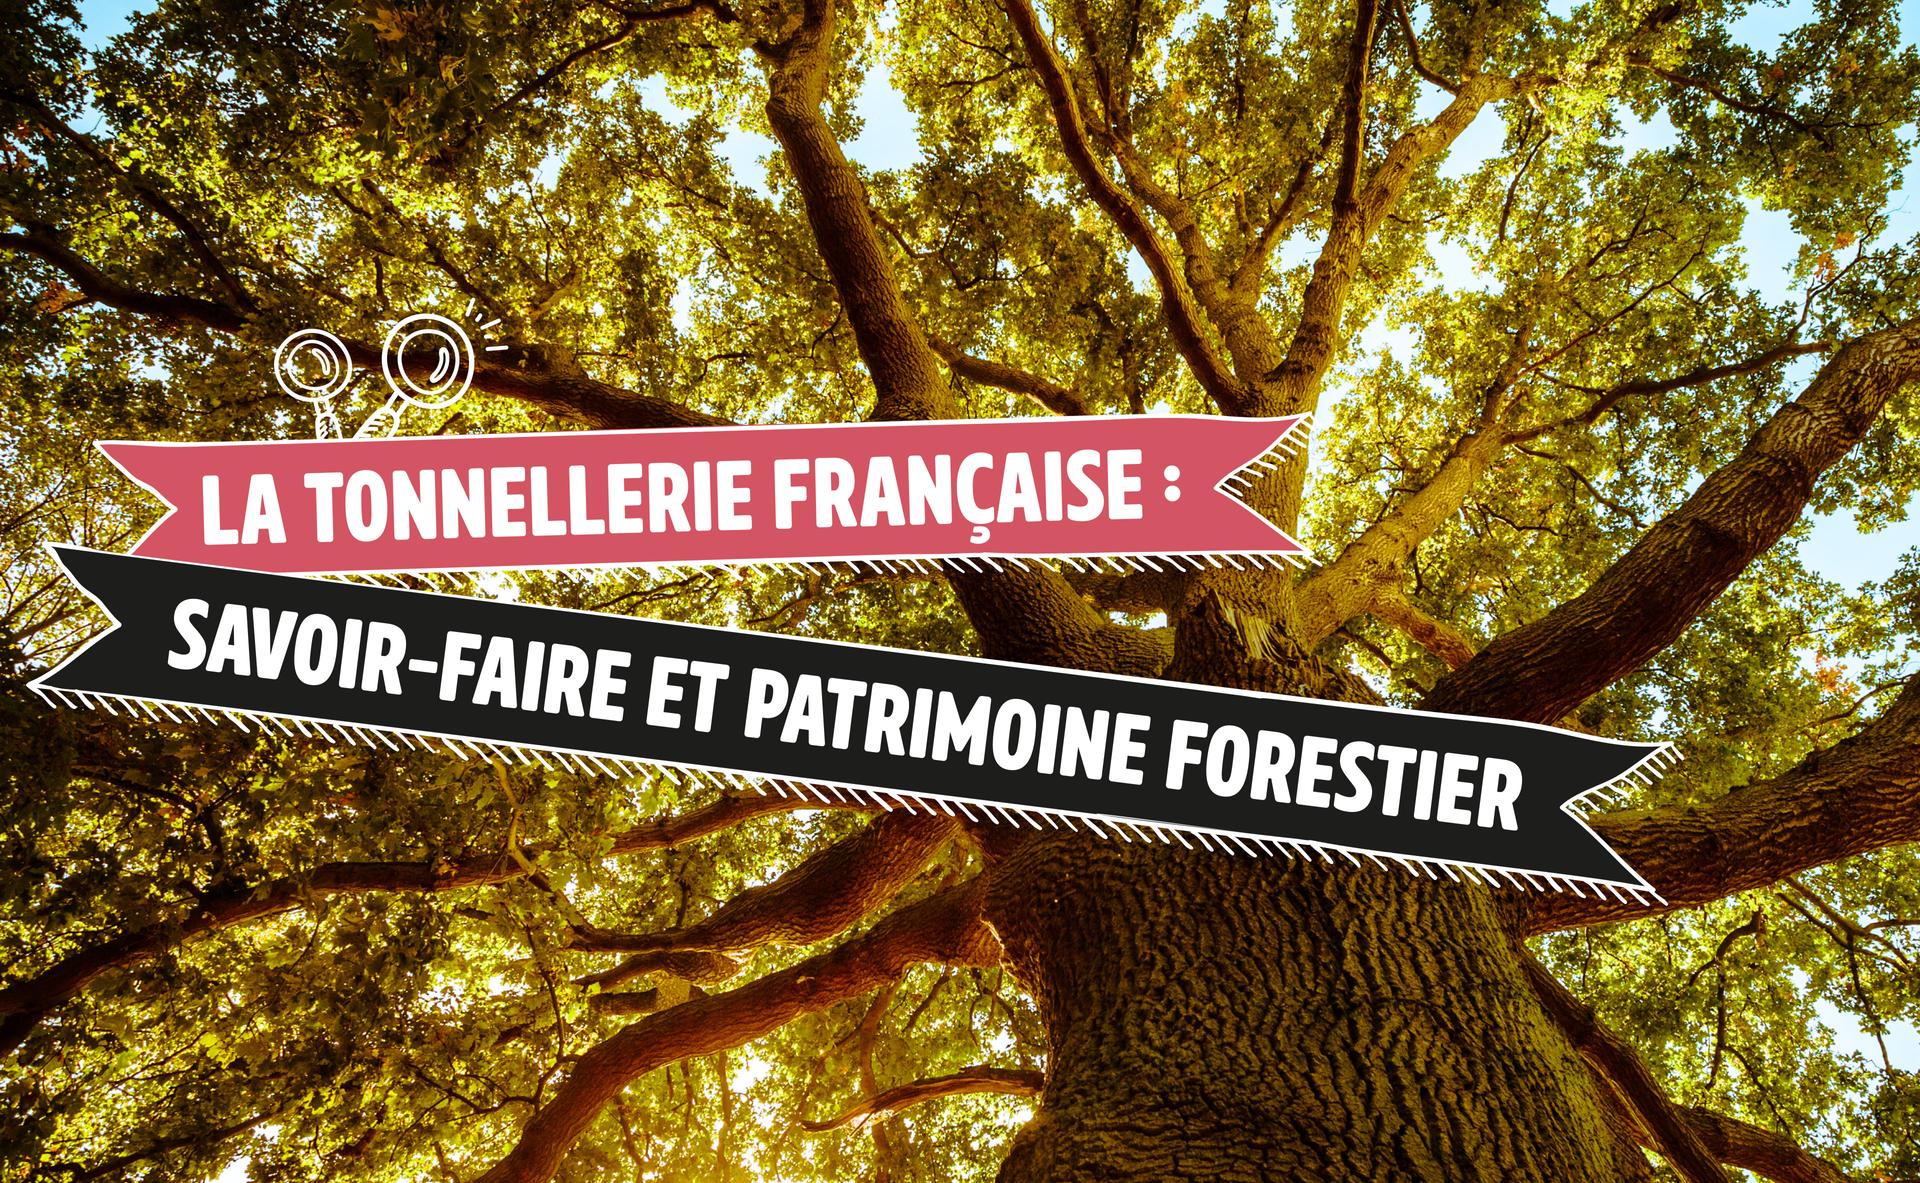 La tonnellerie française : savoir-faire et patrimoine forestier